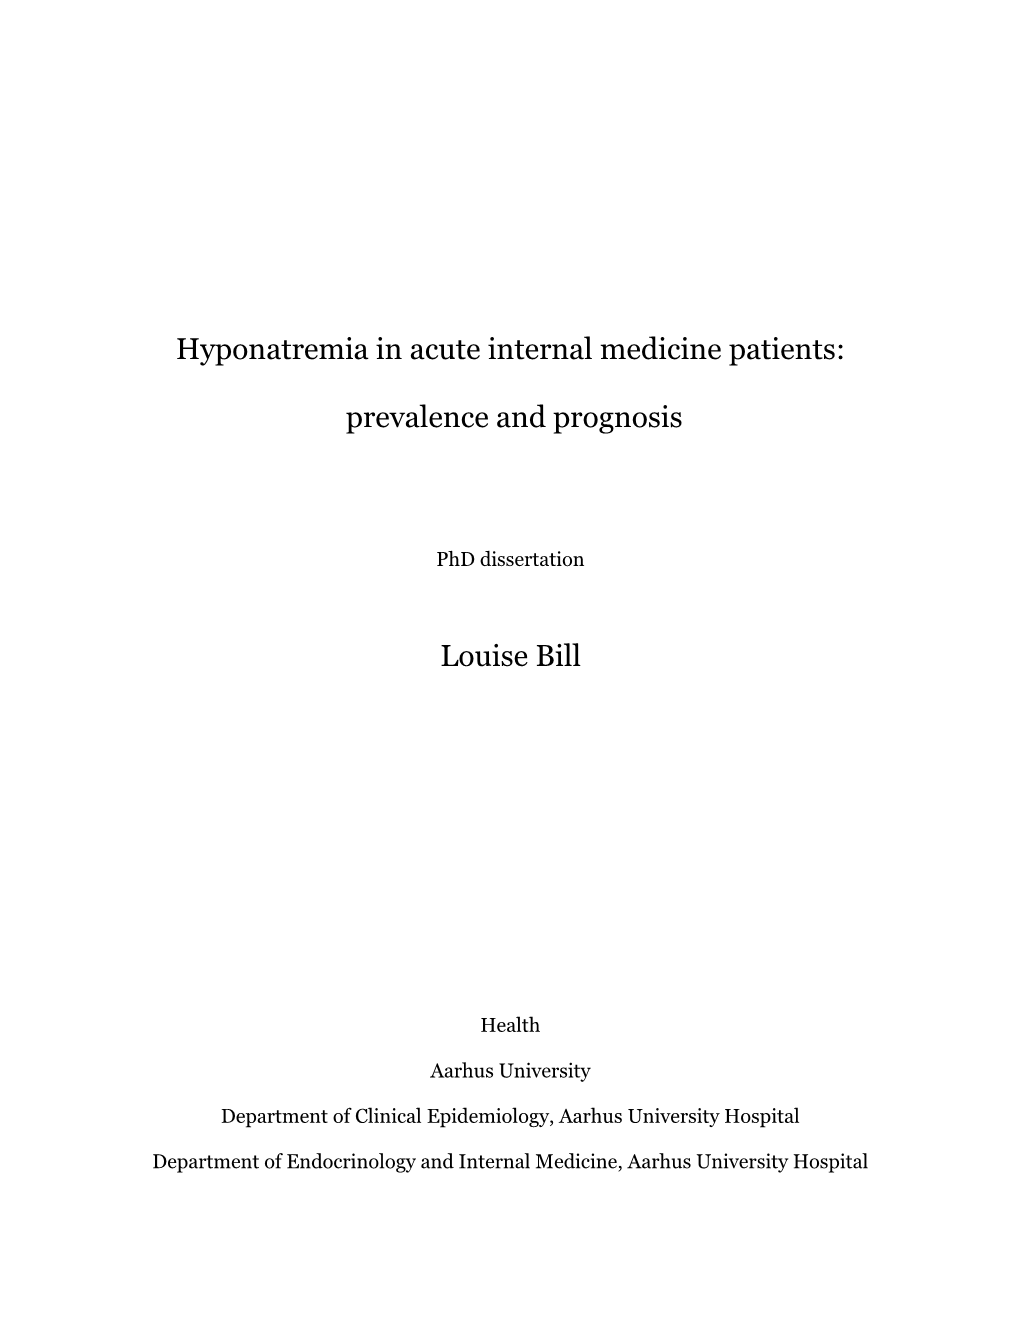 Hyponatremia in Acute Internal Medicine Patients